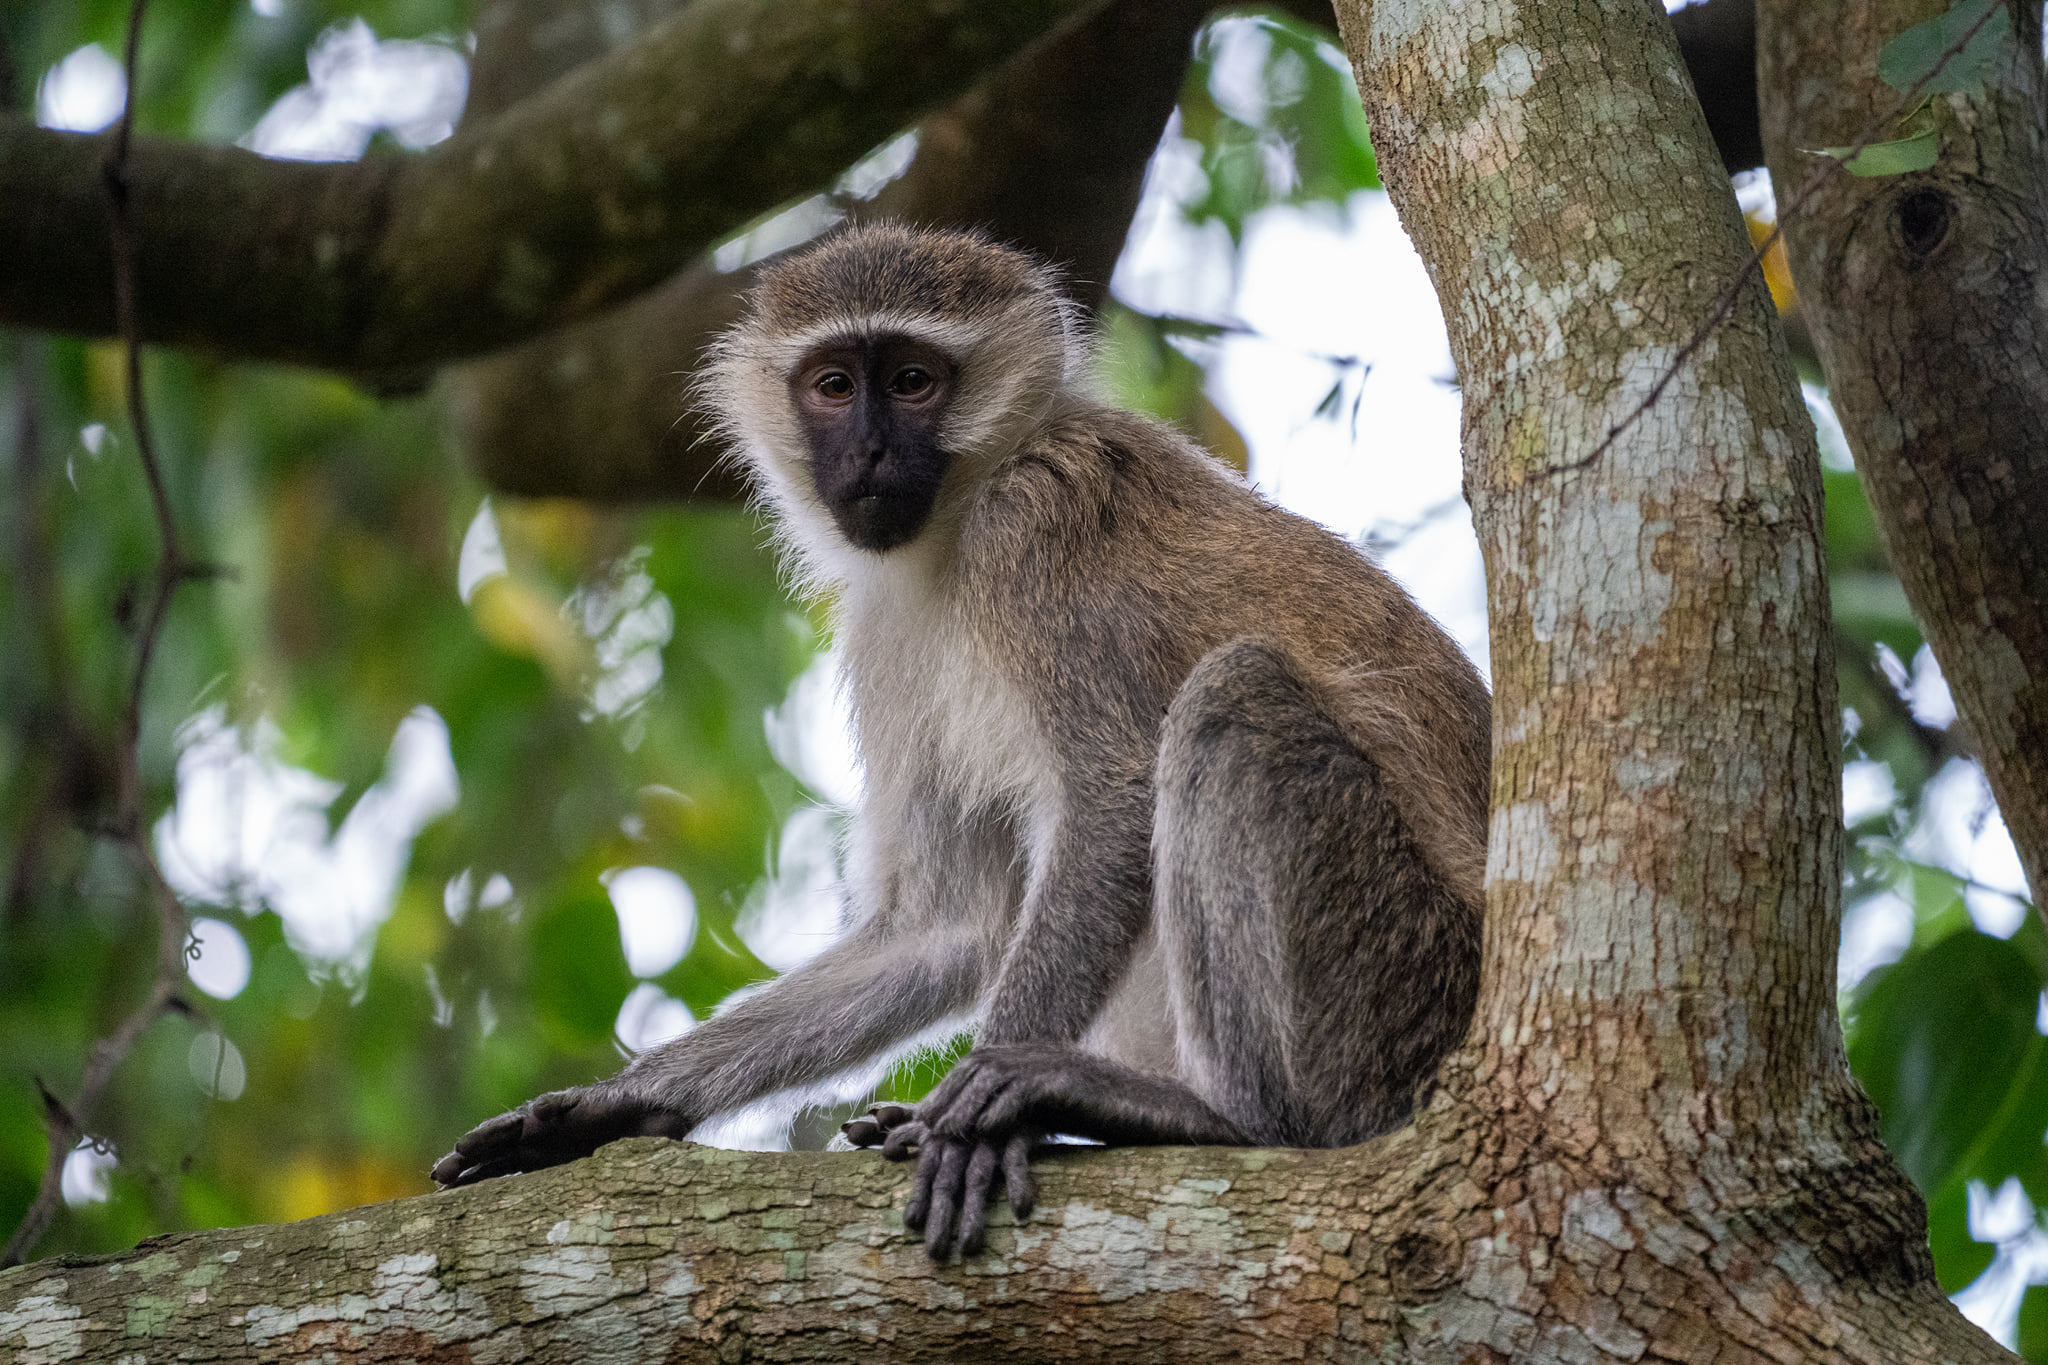 Filming Primates In The Democratic Republic of Congo